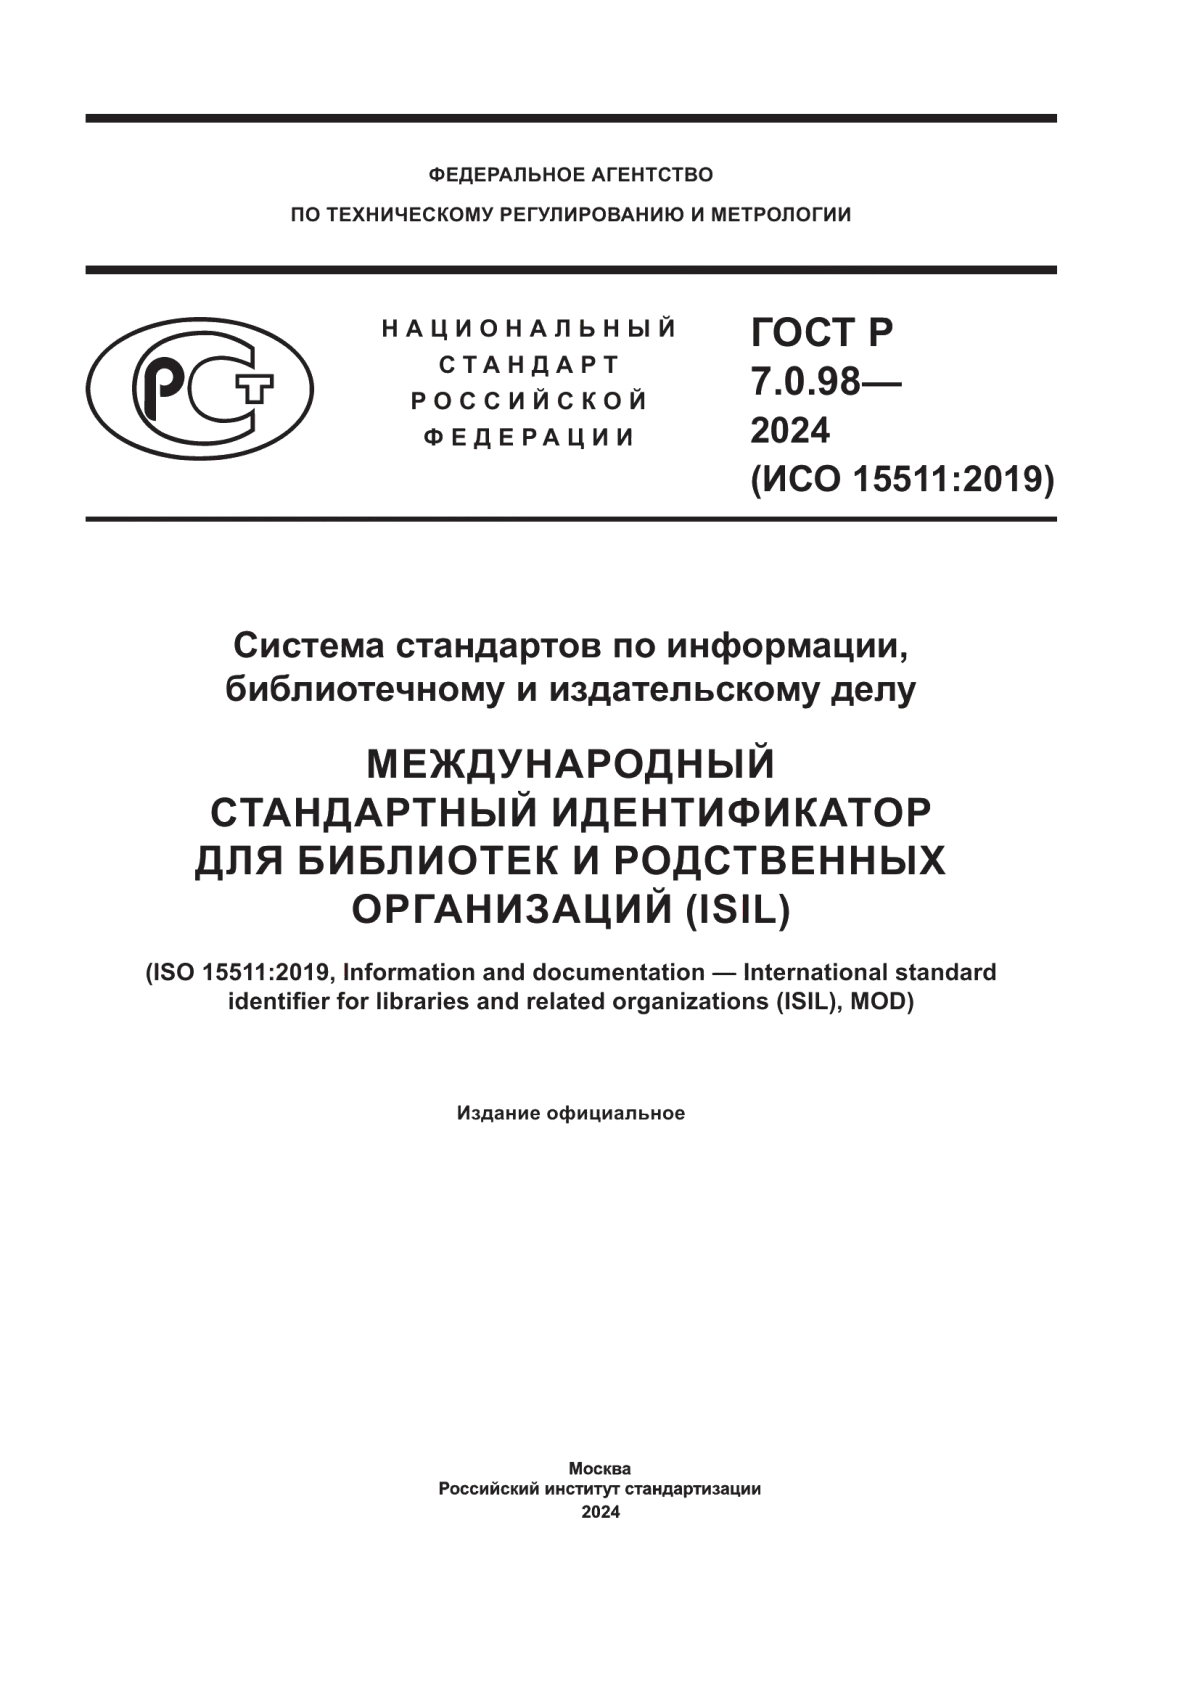 ГОСТ Р 7.0.98-2024 Система стандартов по информации, библиотечному и издательскому делу. Международный стандартный идентификатор для библиотек и родственных организаций (ISIL)